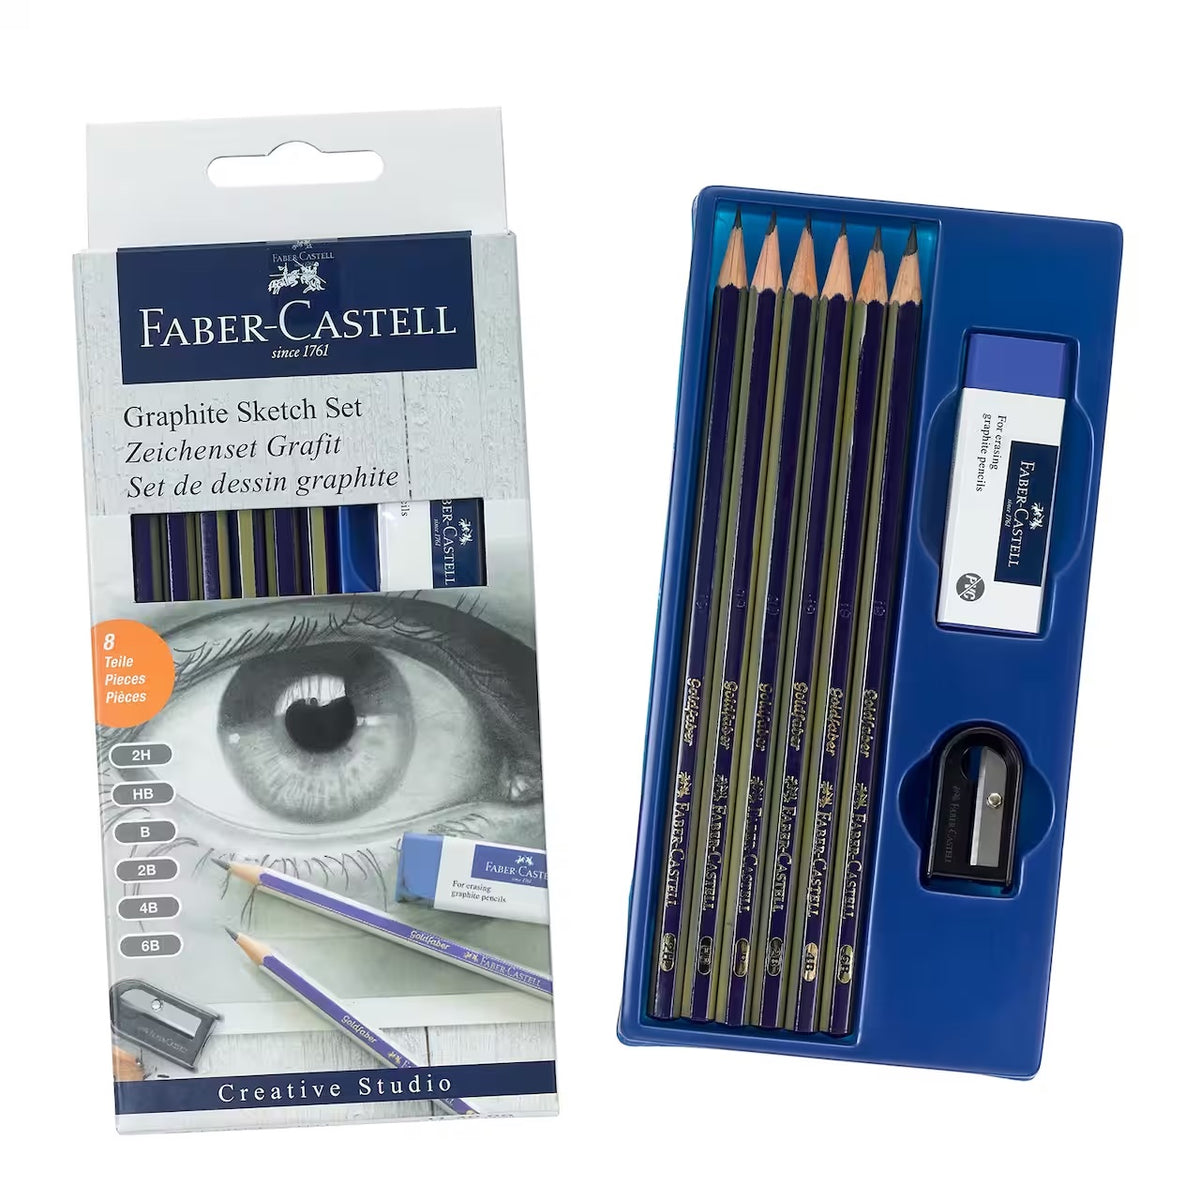 Faber Castell Sketch Set - Graphite Pencils + Sharpener + Eraser